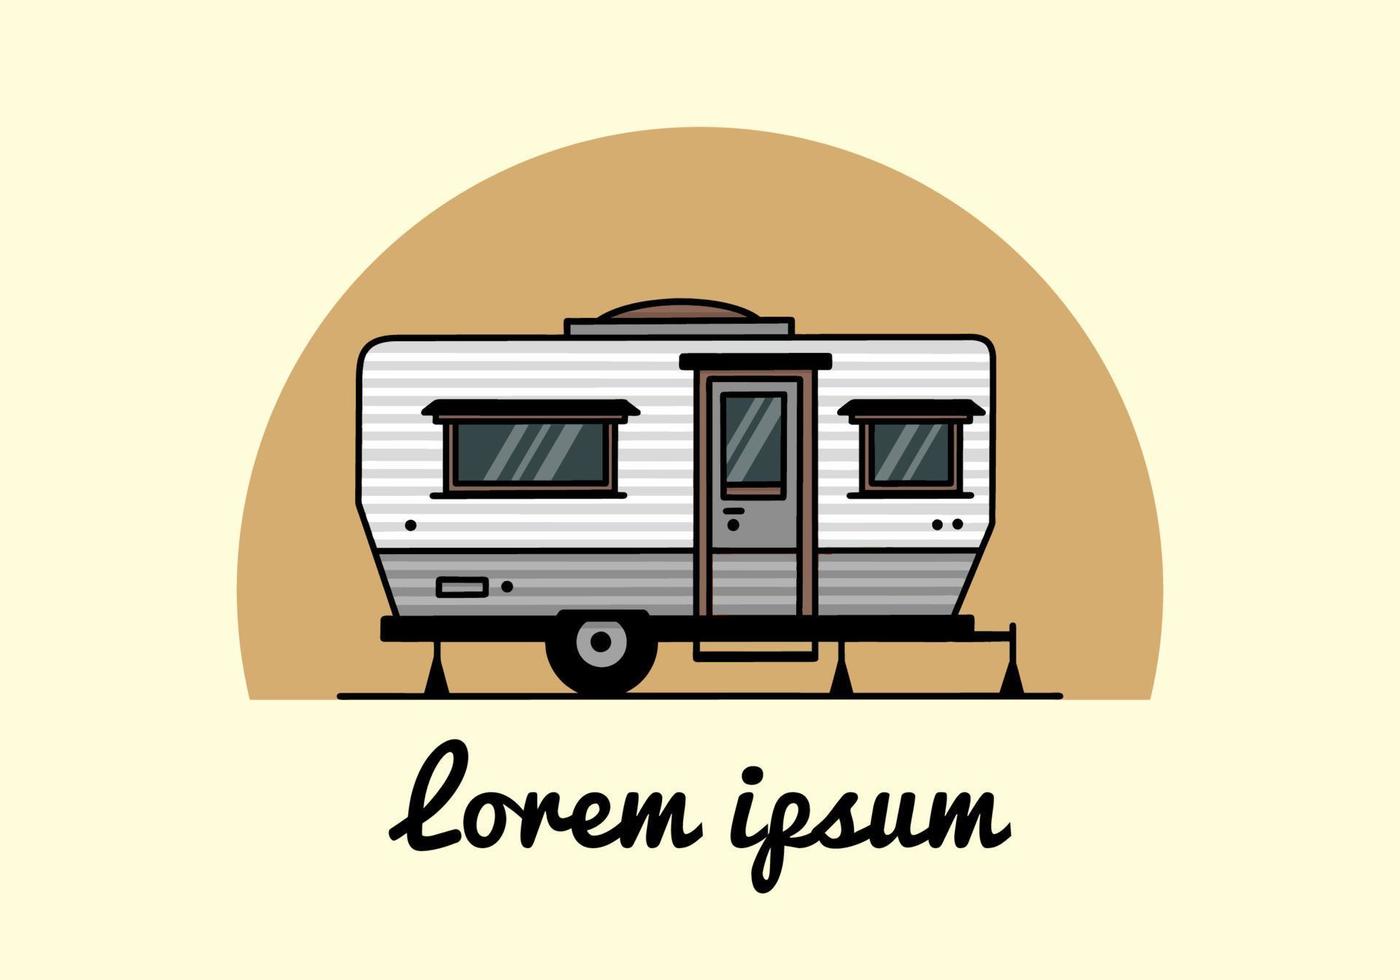 conception d'insigne d'illustration de camping-car en forme de larme vecteur